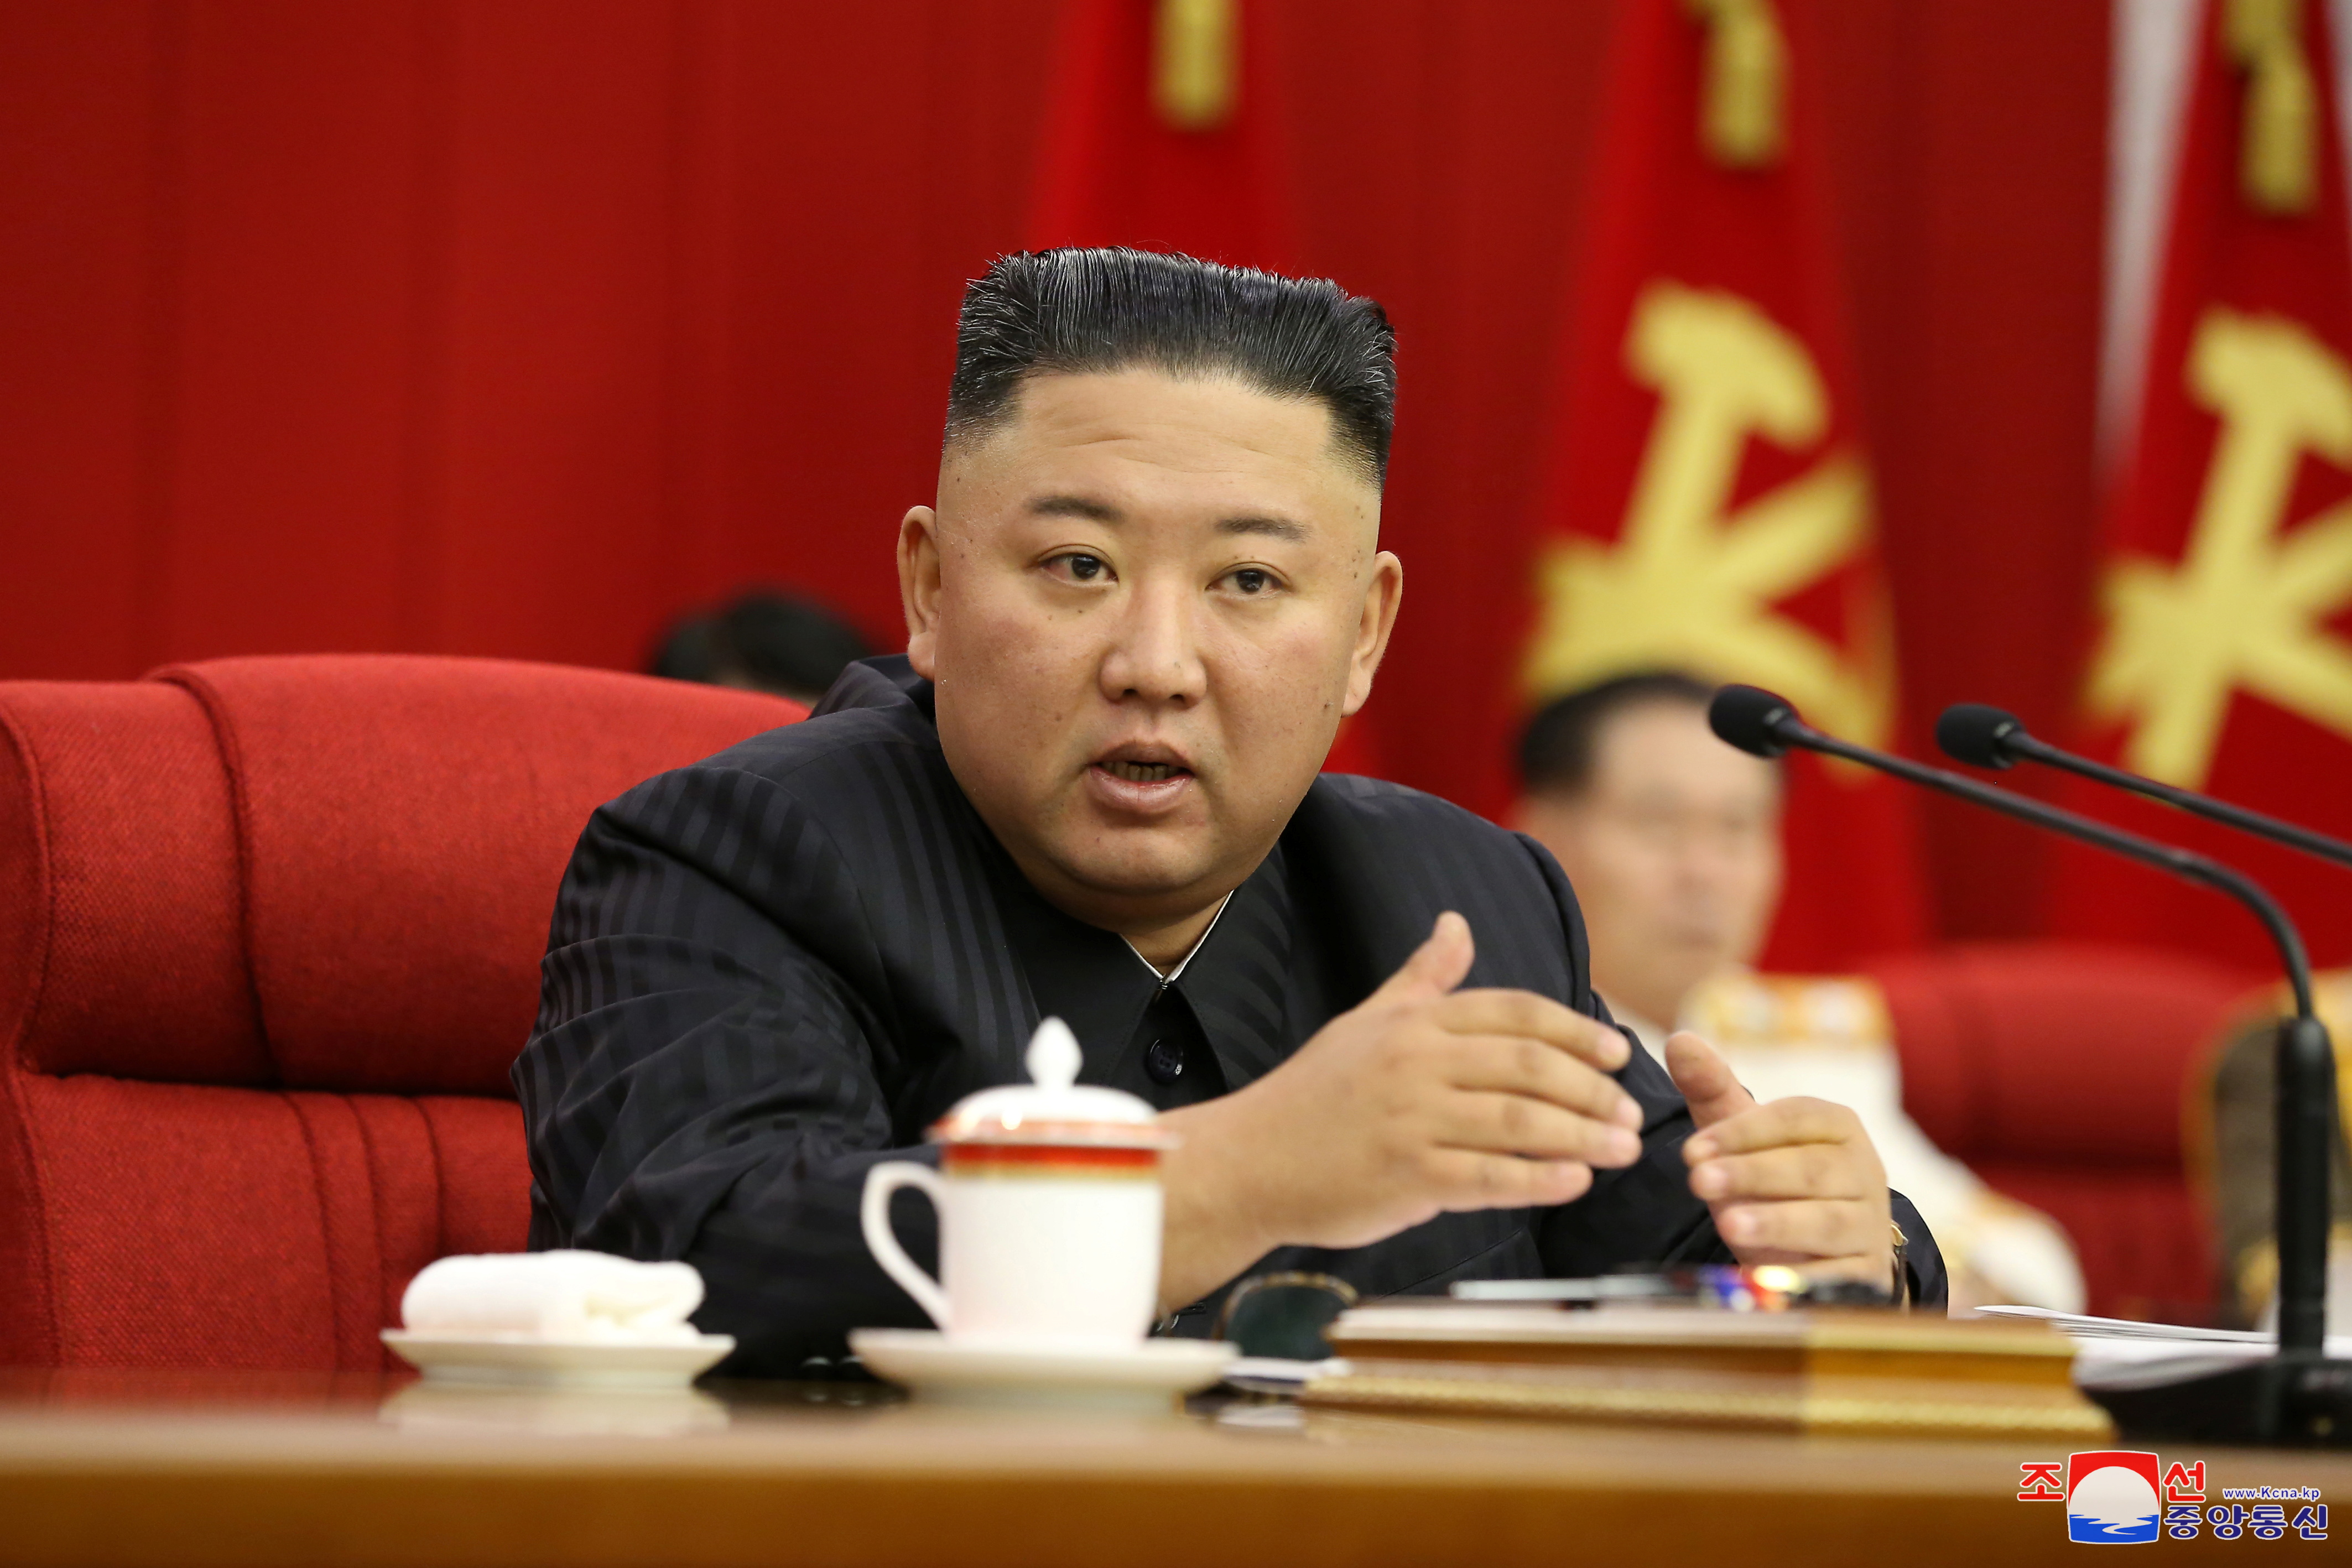 North Korean leader Kim speaks during WPK meeting in Pyongyang